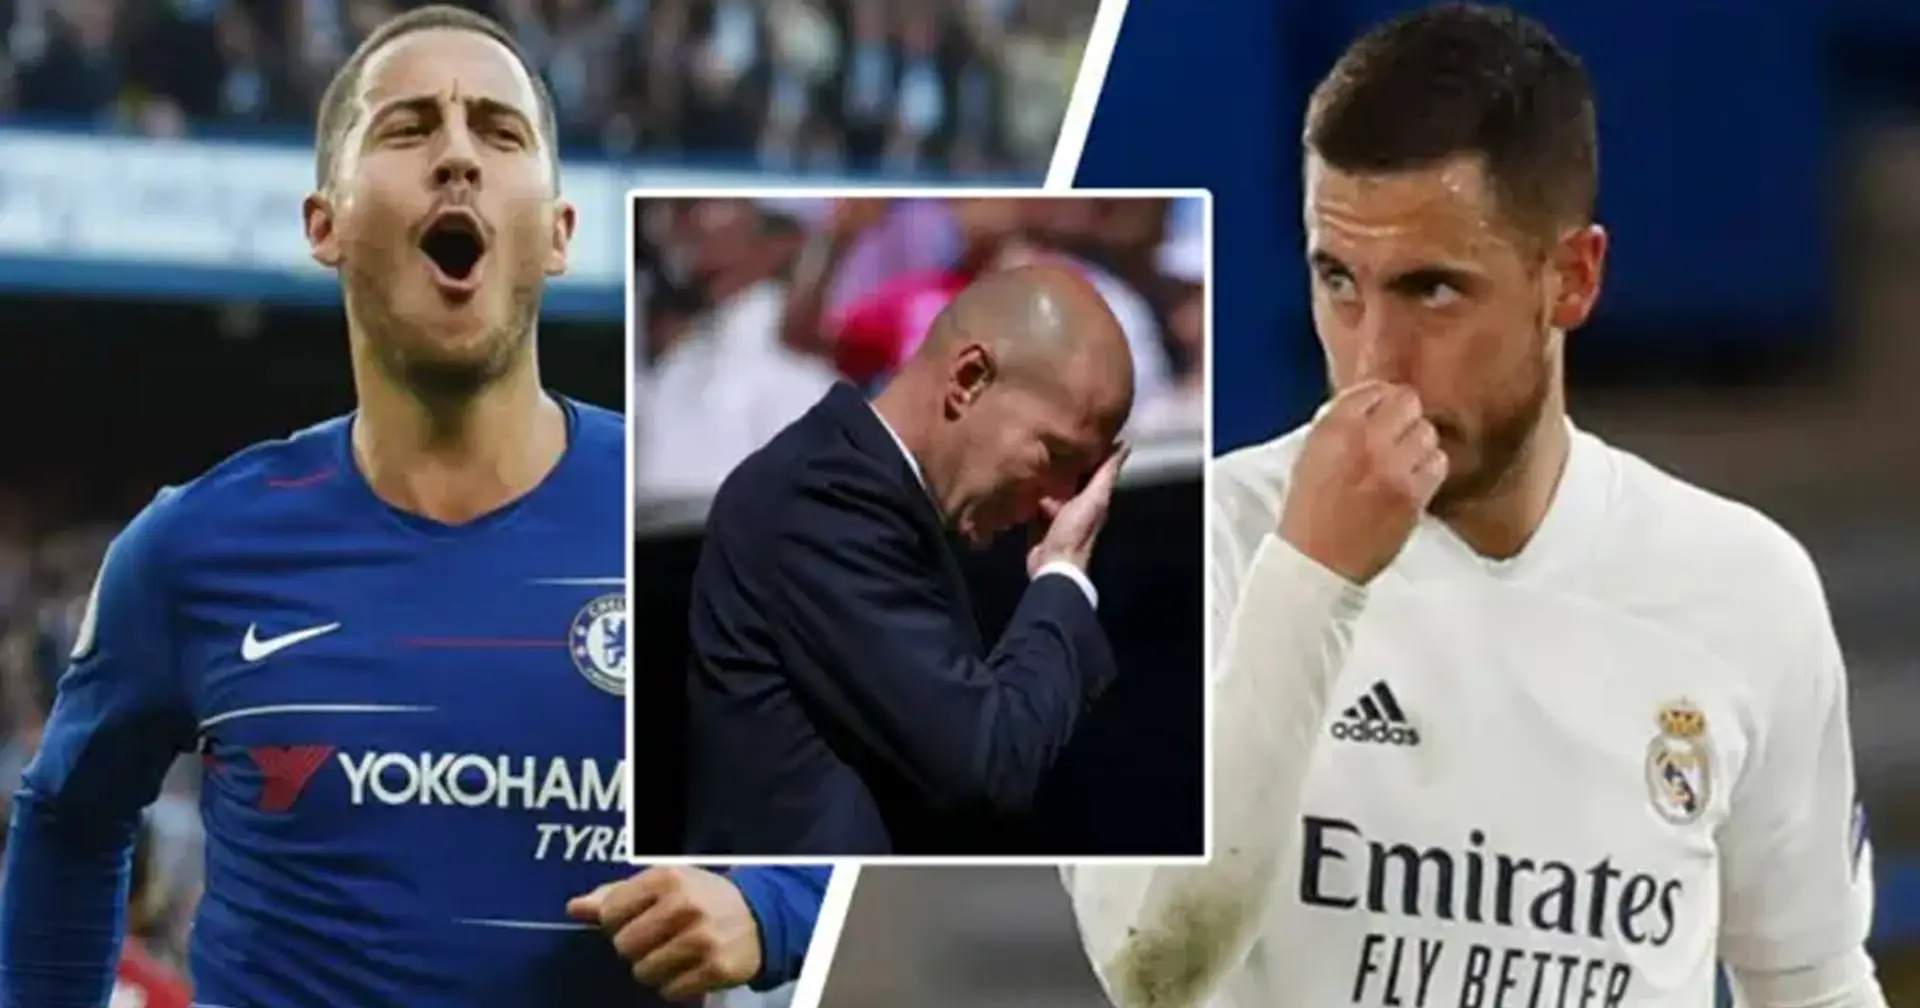 Los fanáticos nombran la razón clave detrás del pobre rendimiento de Hazard en el Madrid: no son las lesiones